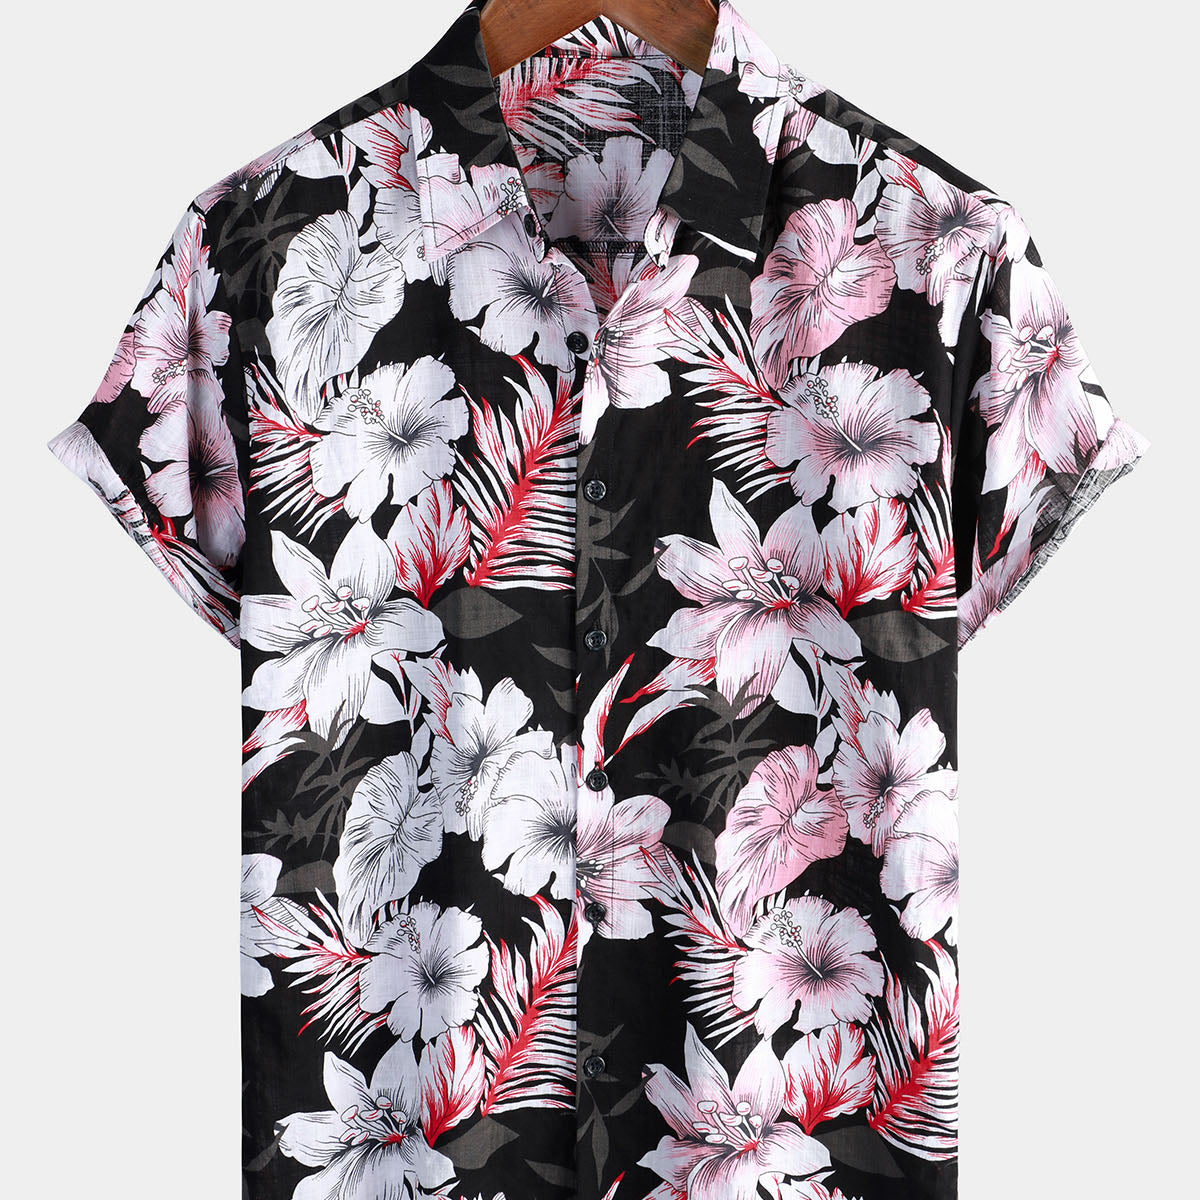 Men's Tropical Pink Floral Button Up Hibiscus Summer Holiday Beach Hawaiian Short Sleeve Shirt